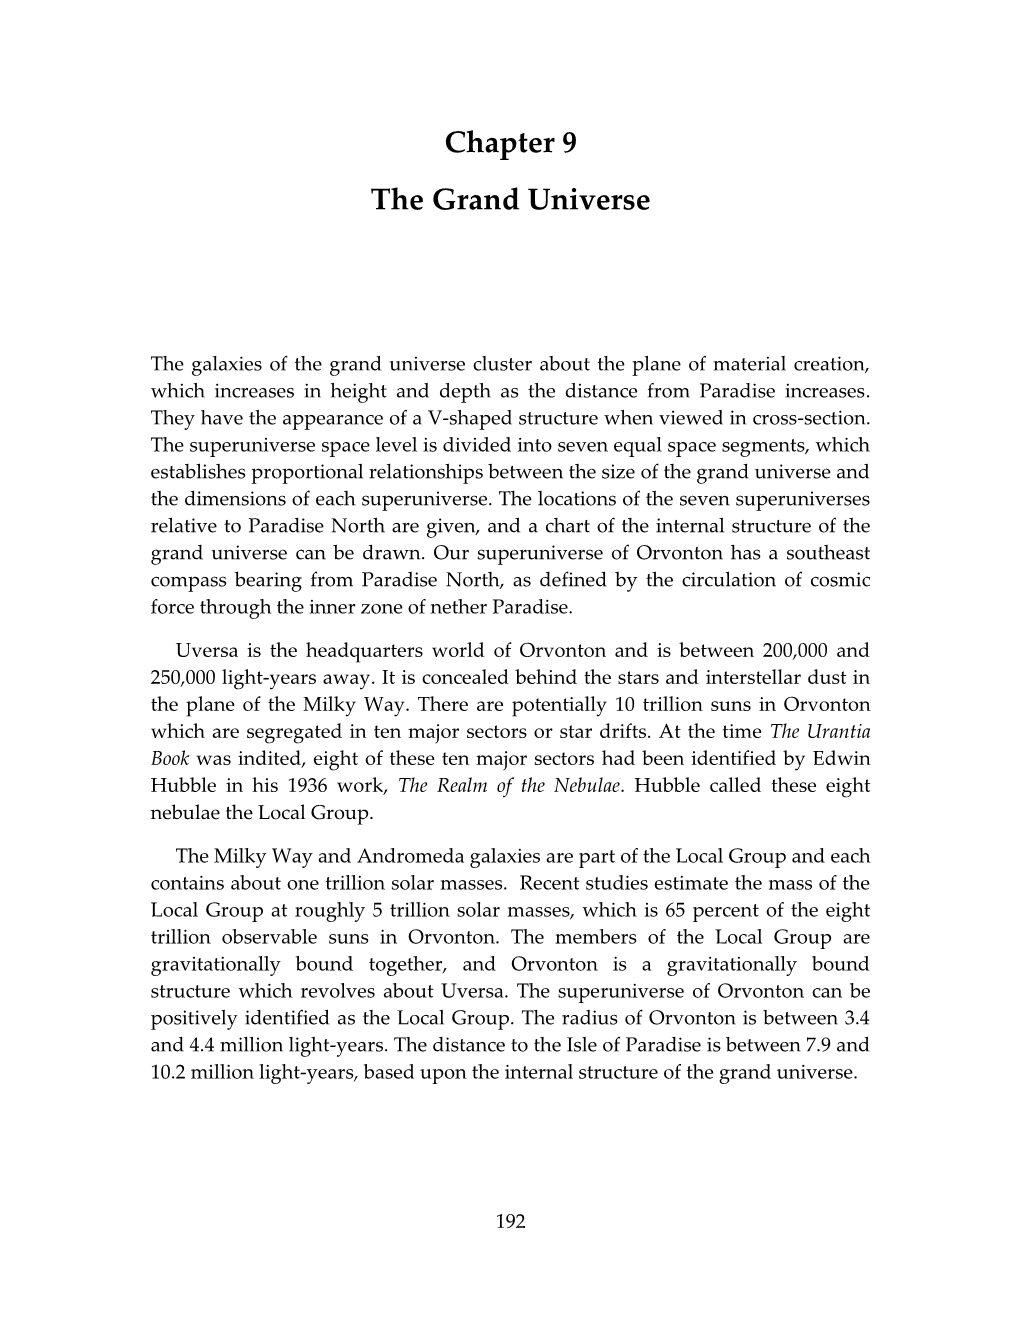 9. the Grand Universe